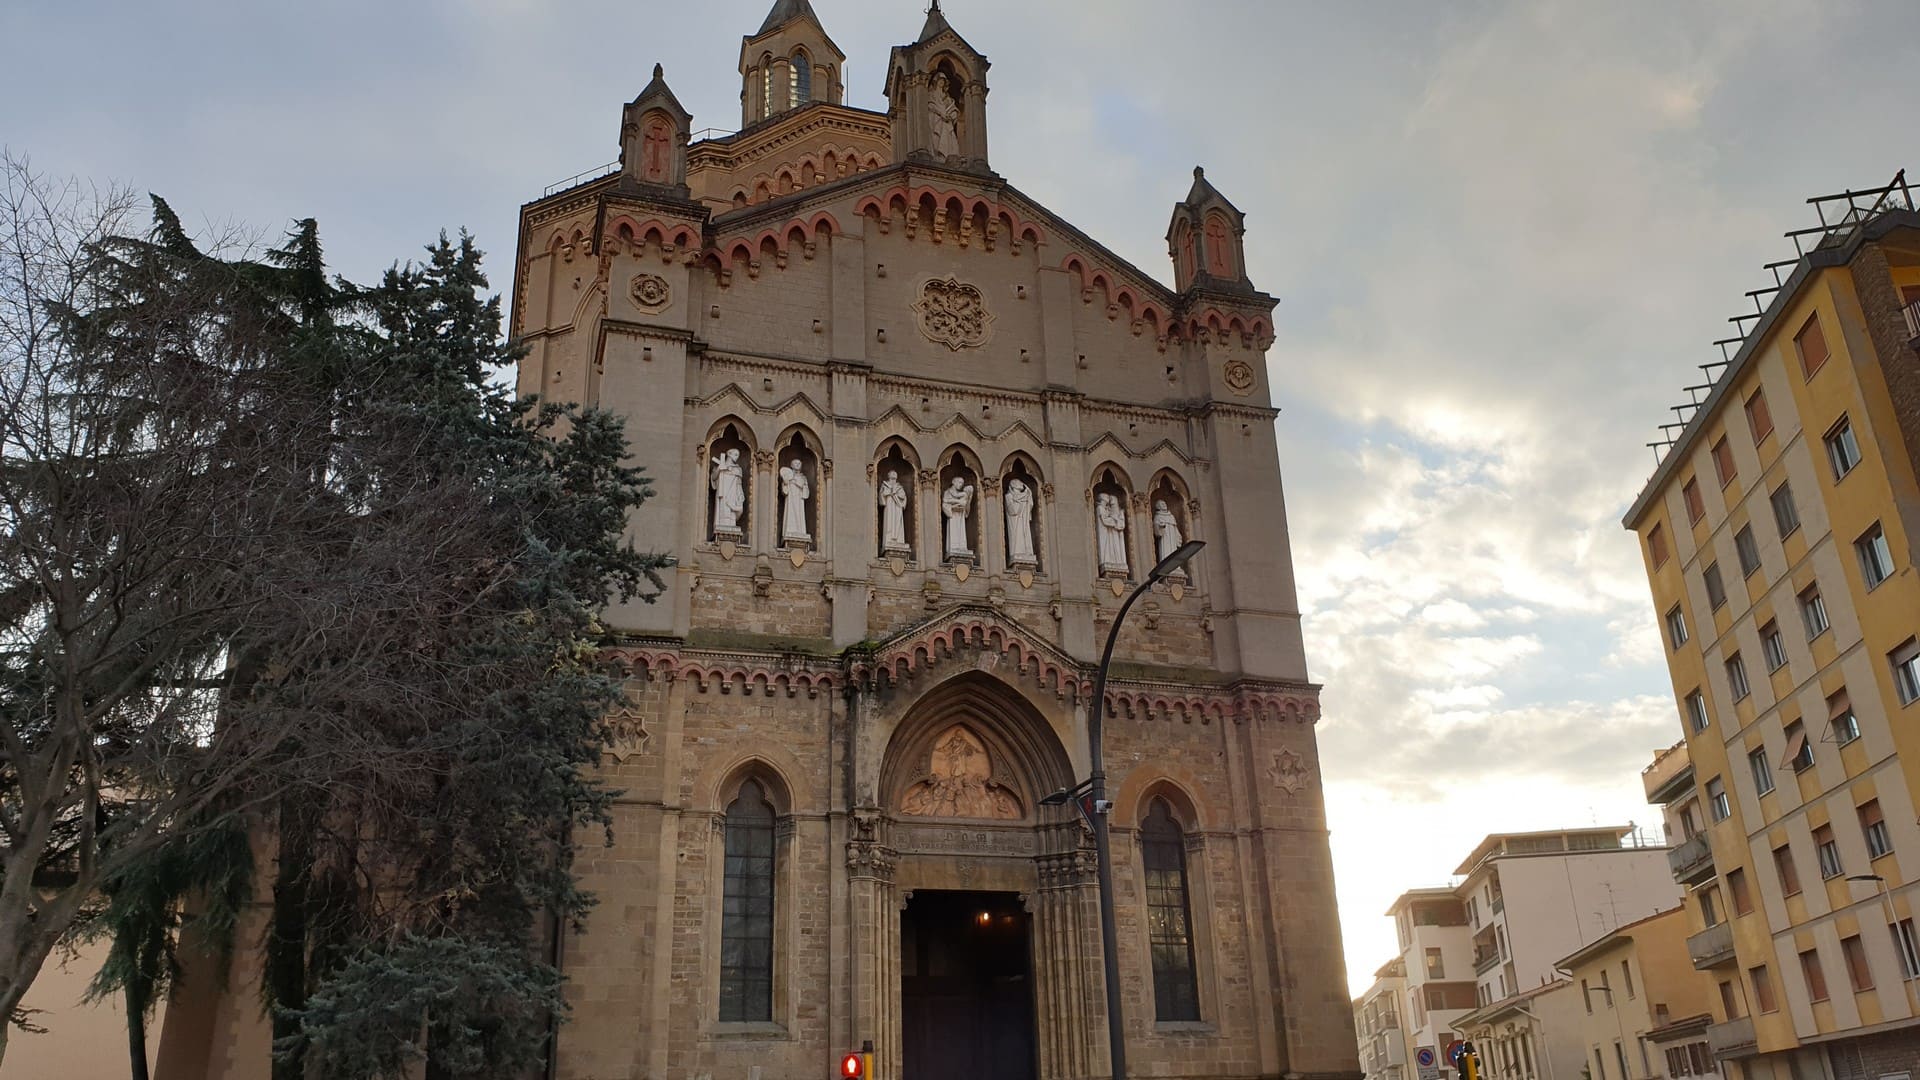 L'ingresso e la facciata della Chiesa dei Sette Santi, una chiesa davvero ignota a Firenze. Si vedono al centro dell'edificio le statue dei sette Santi fondatori.